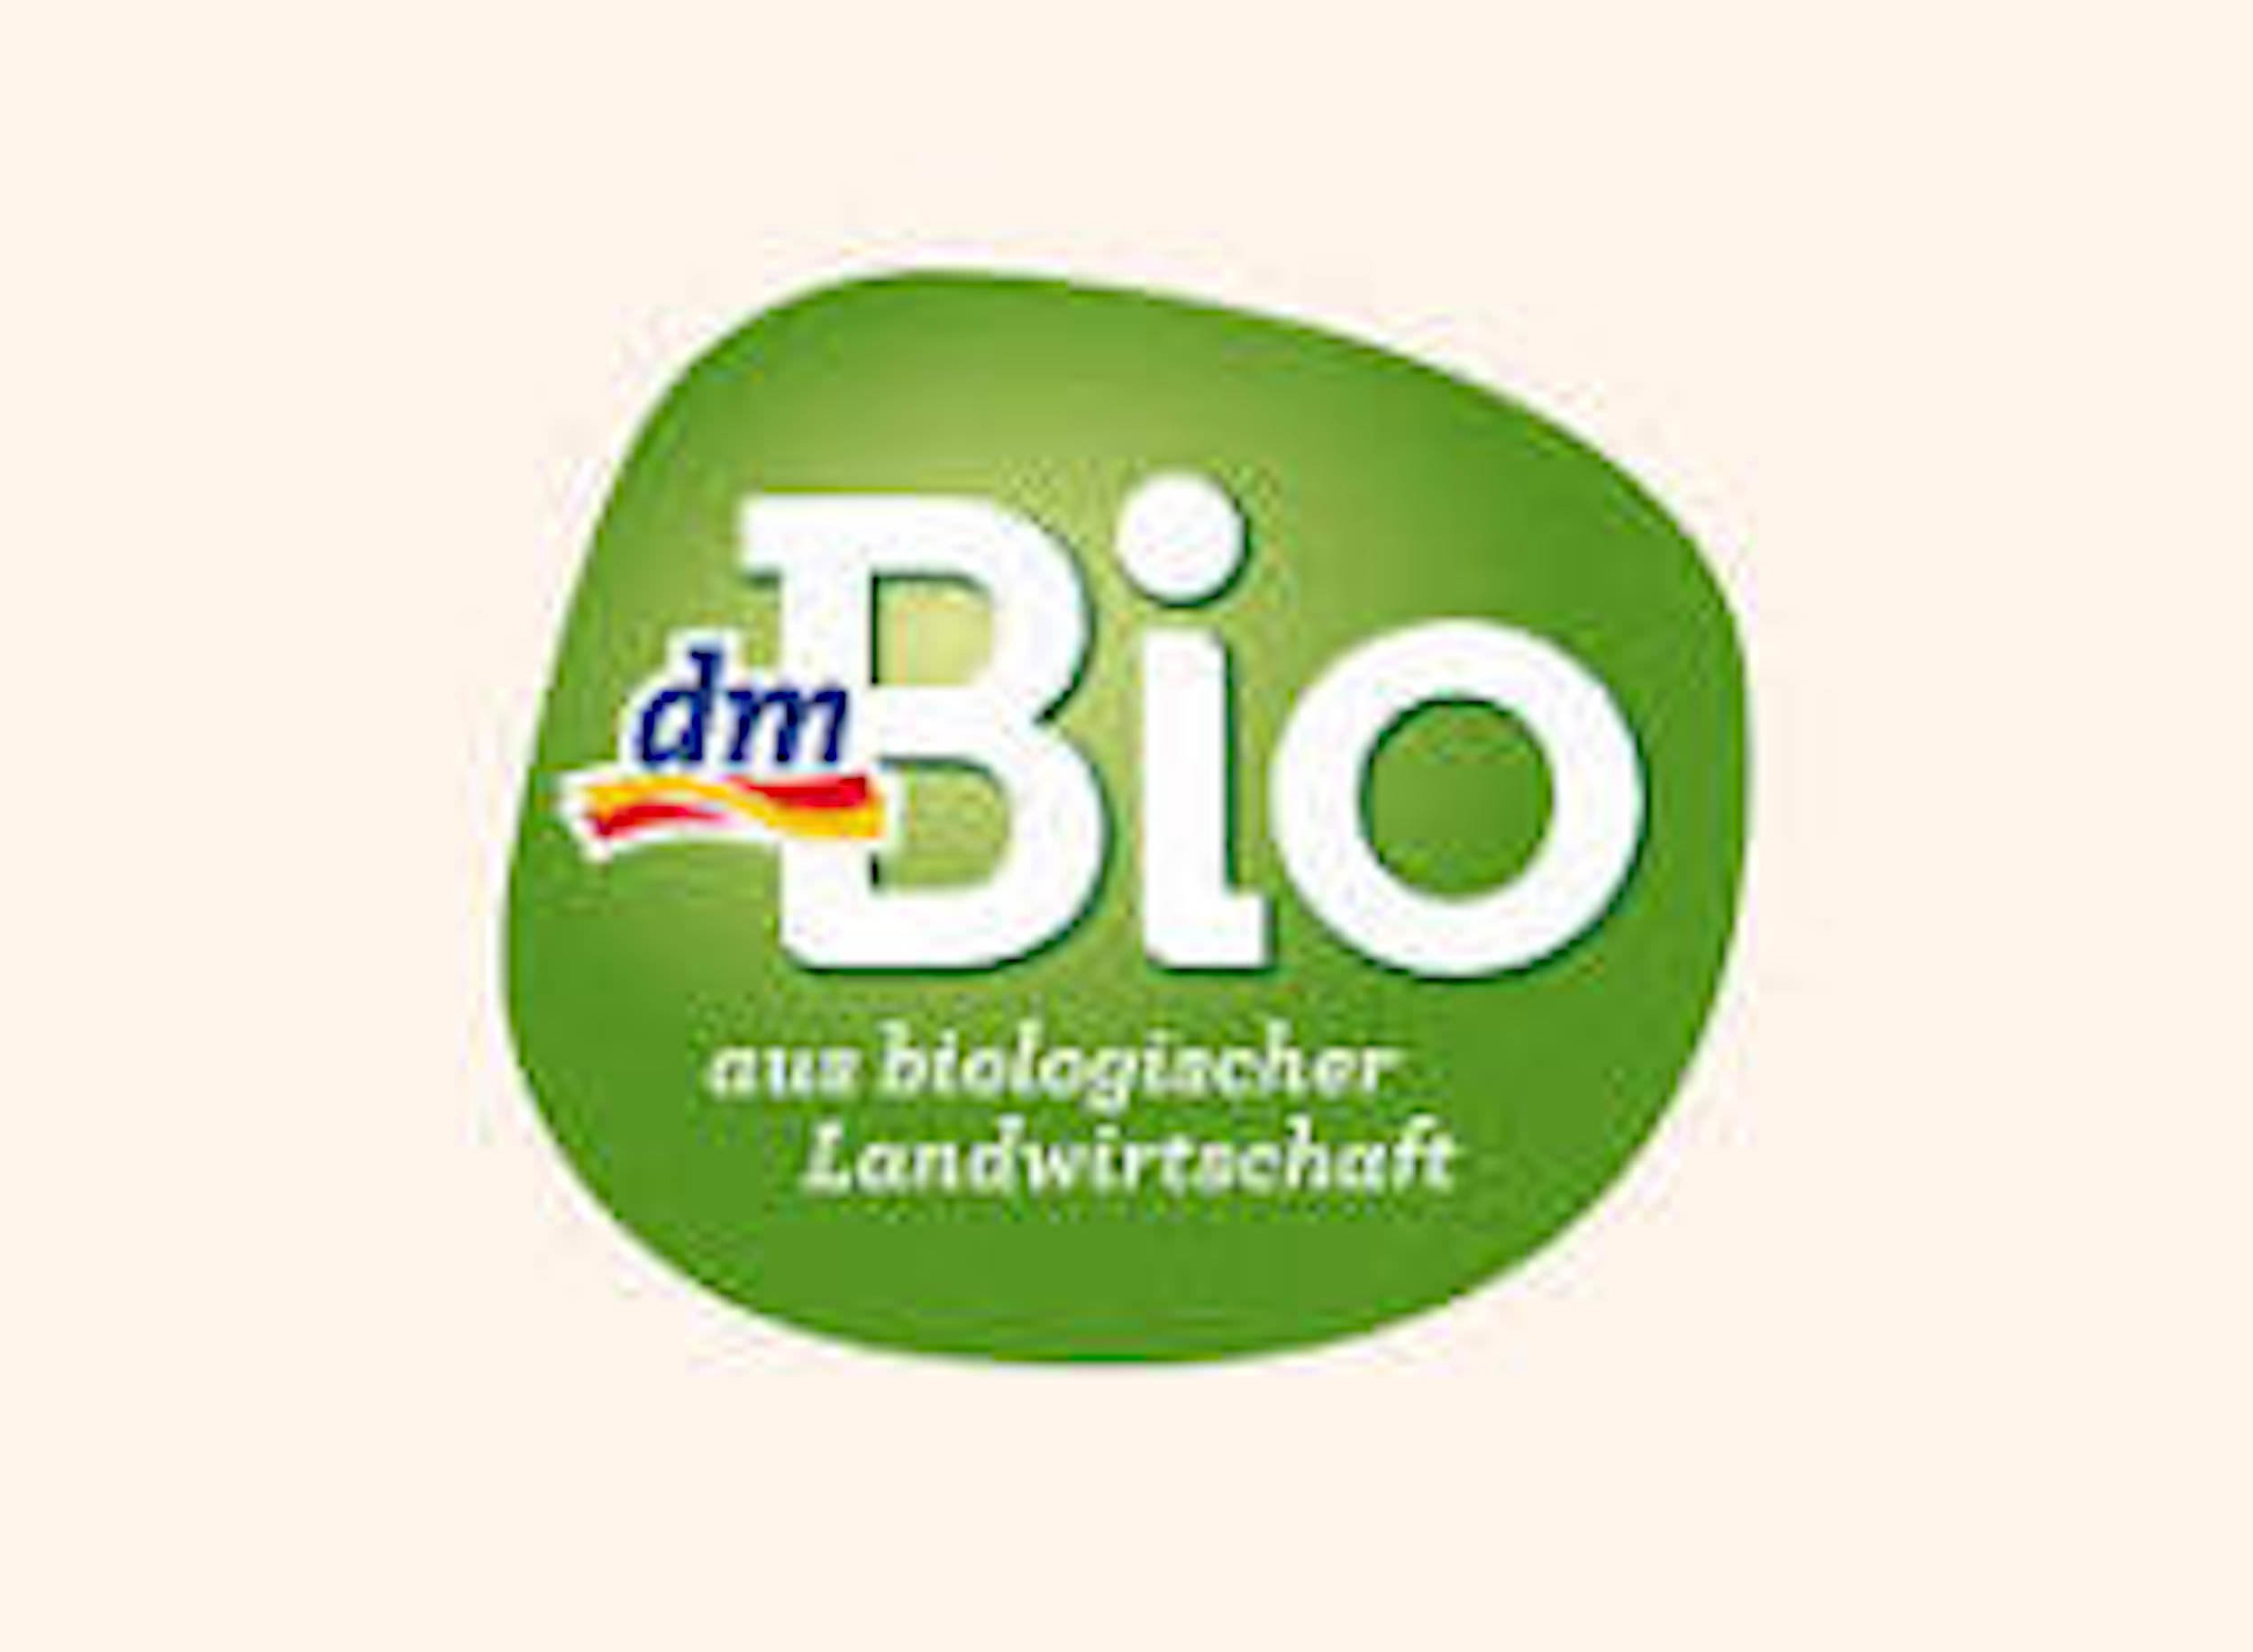 dmbio-logo.jpeg